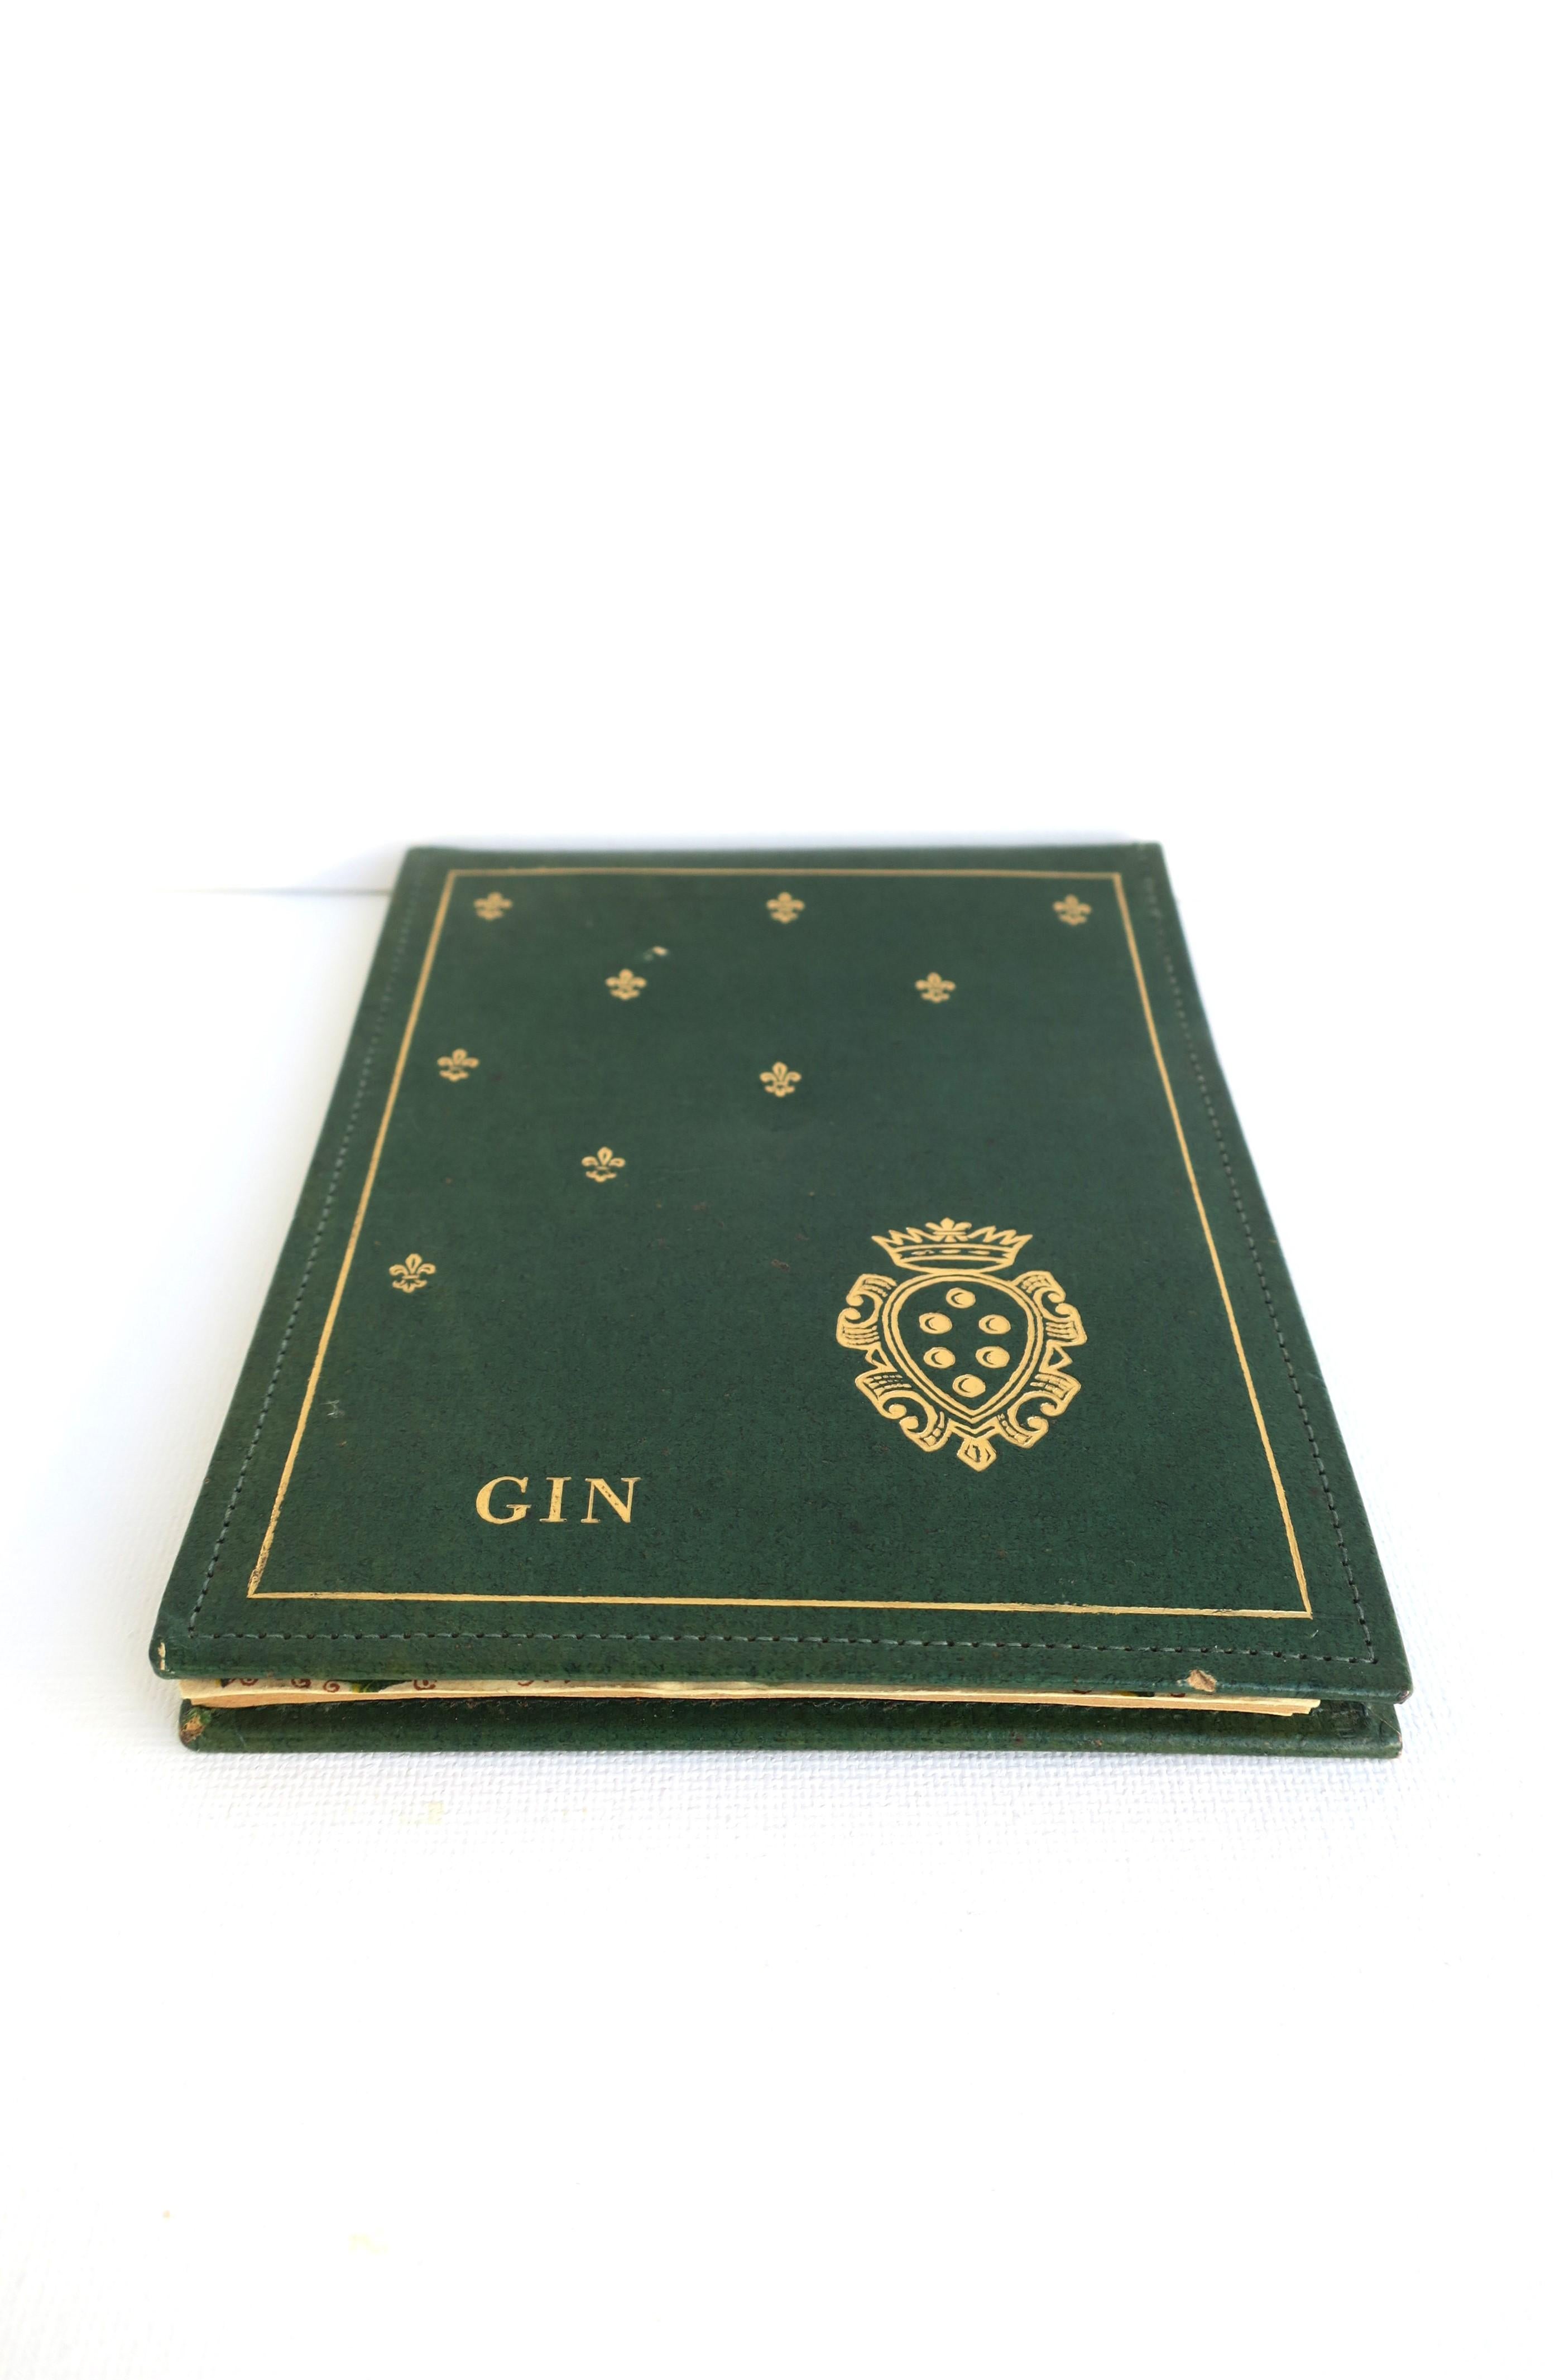 Papier Pad de jeu de cartes à Gin fabriqué en Italie en vente